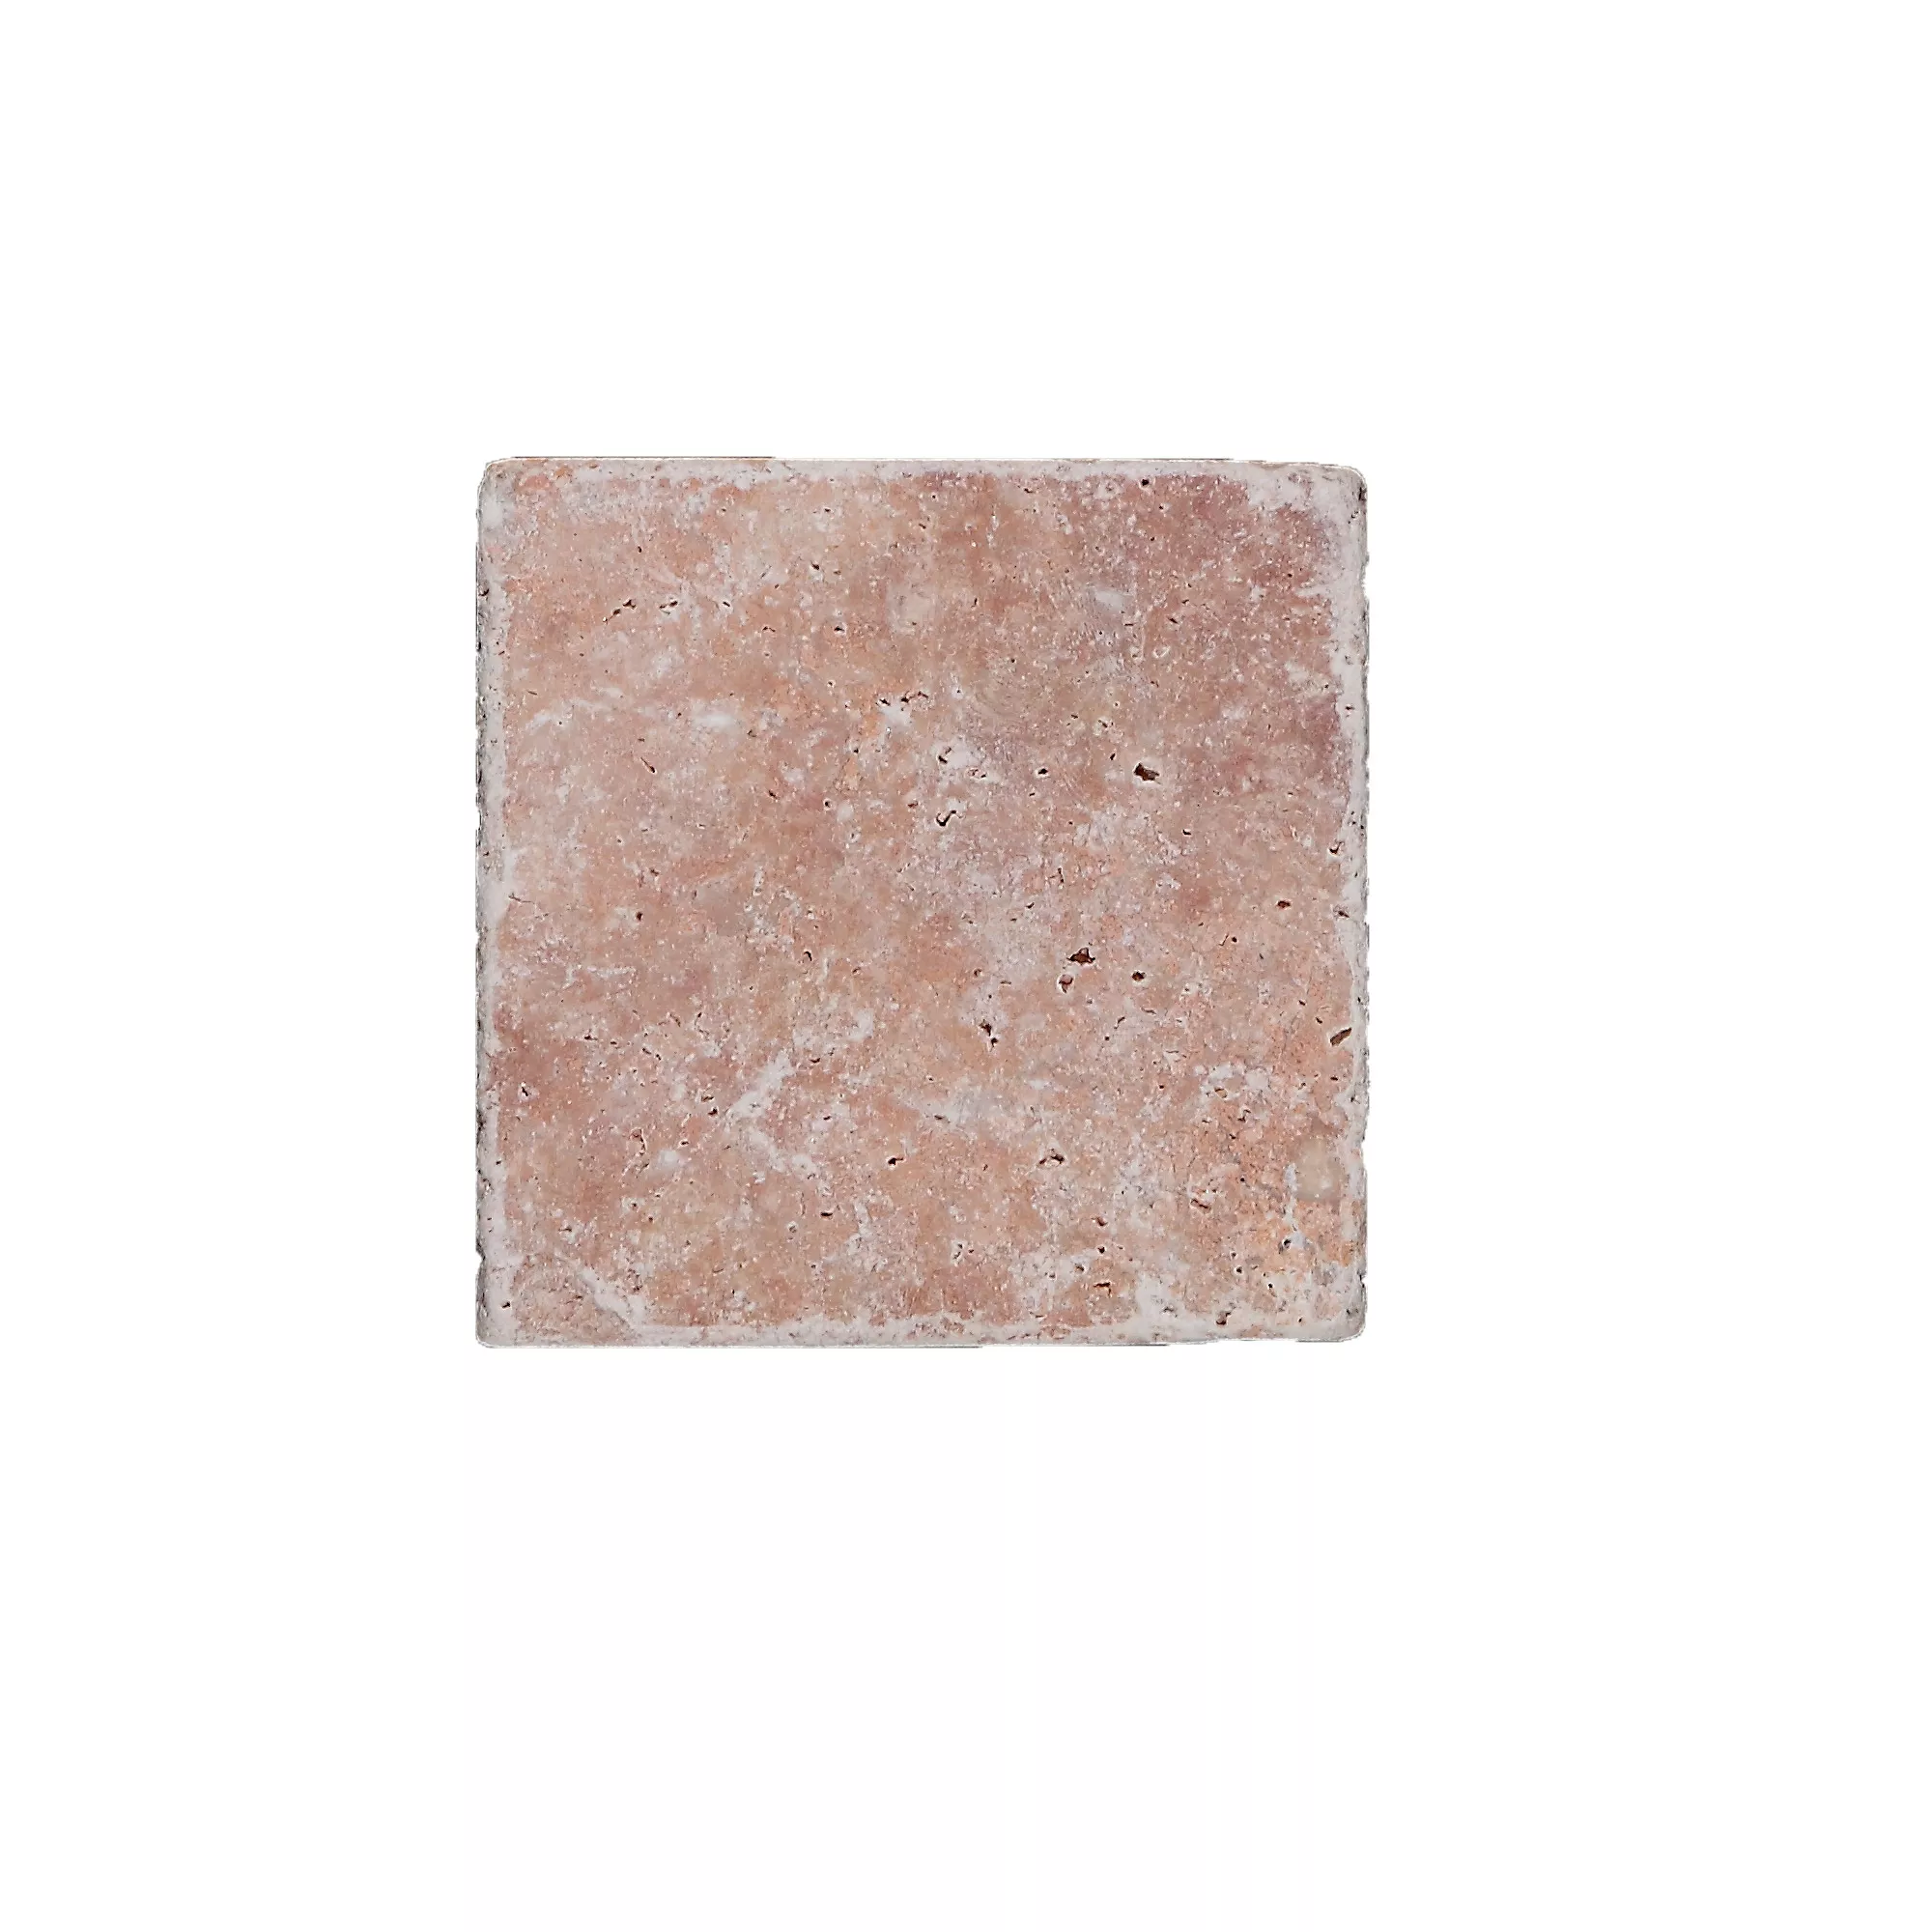 Πλακάκια Aπό Φυσική Πέτρα Είδος Ασβεστόλιθου Usantos Rosso 10x10cm